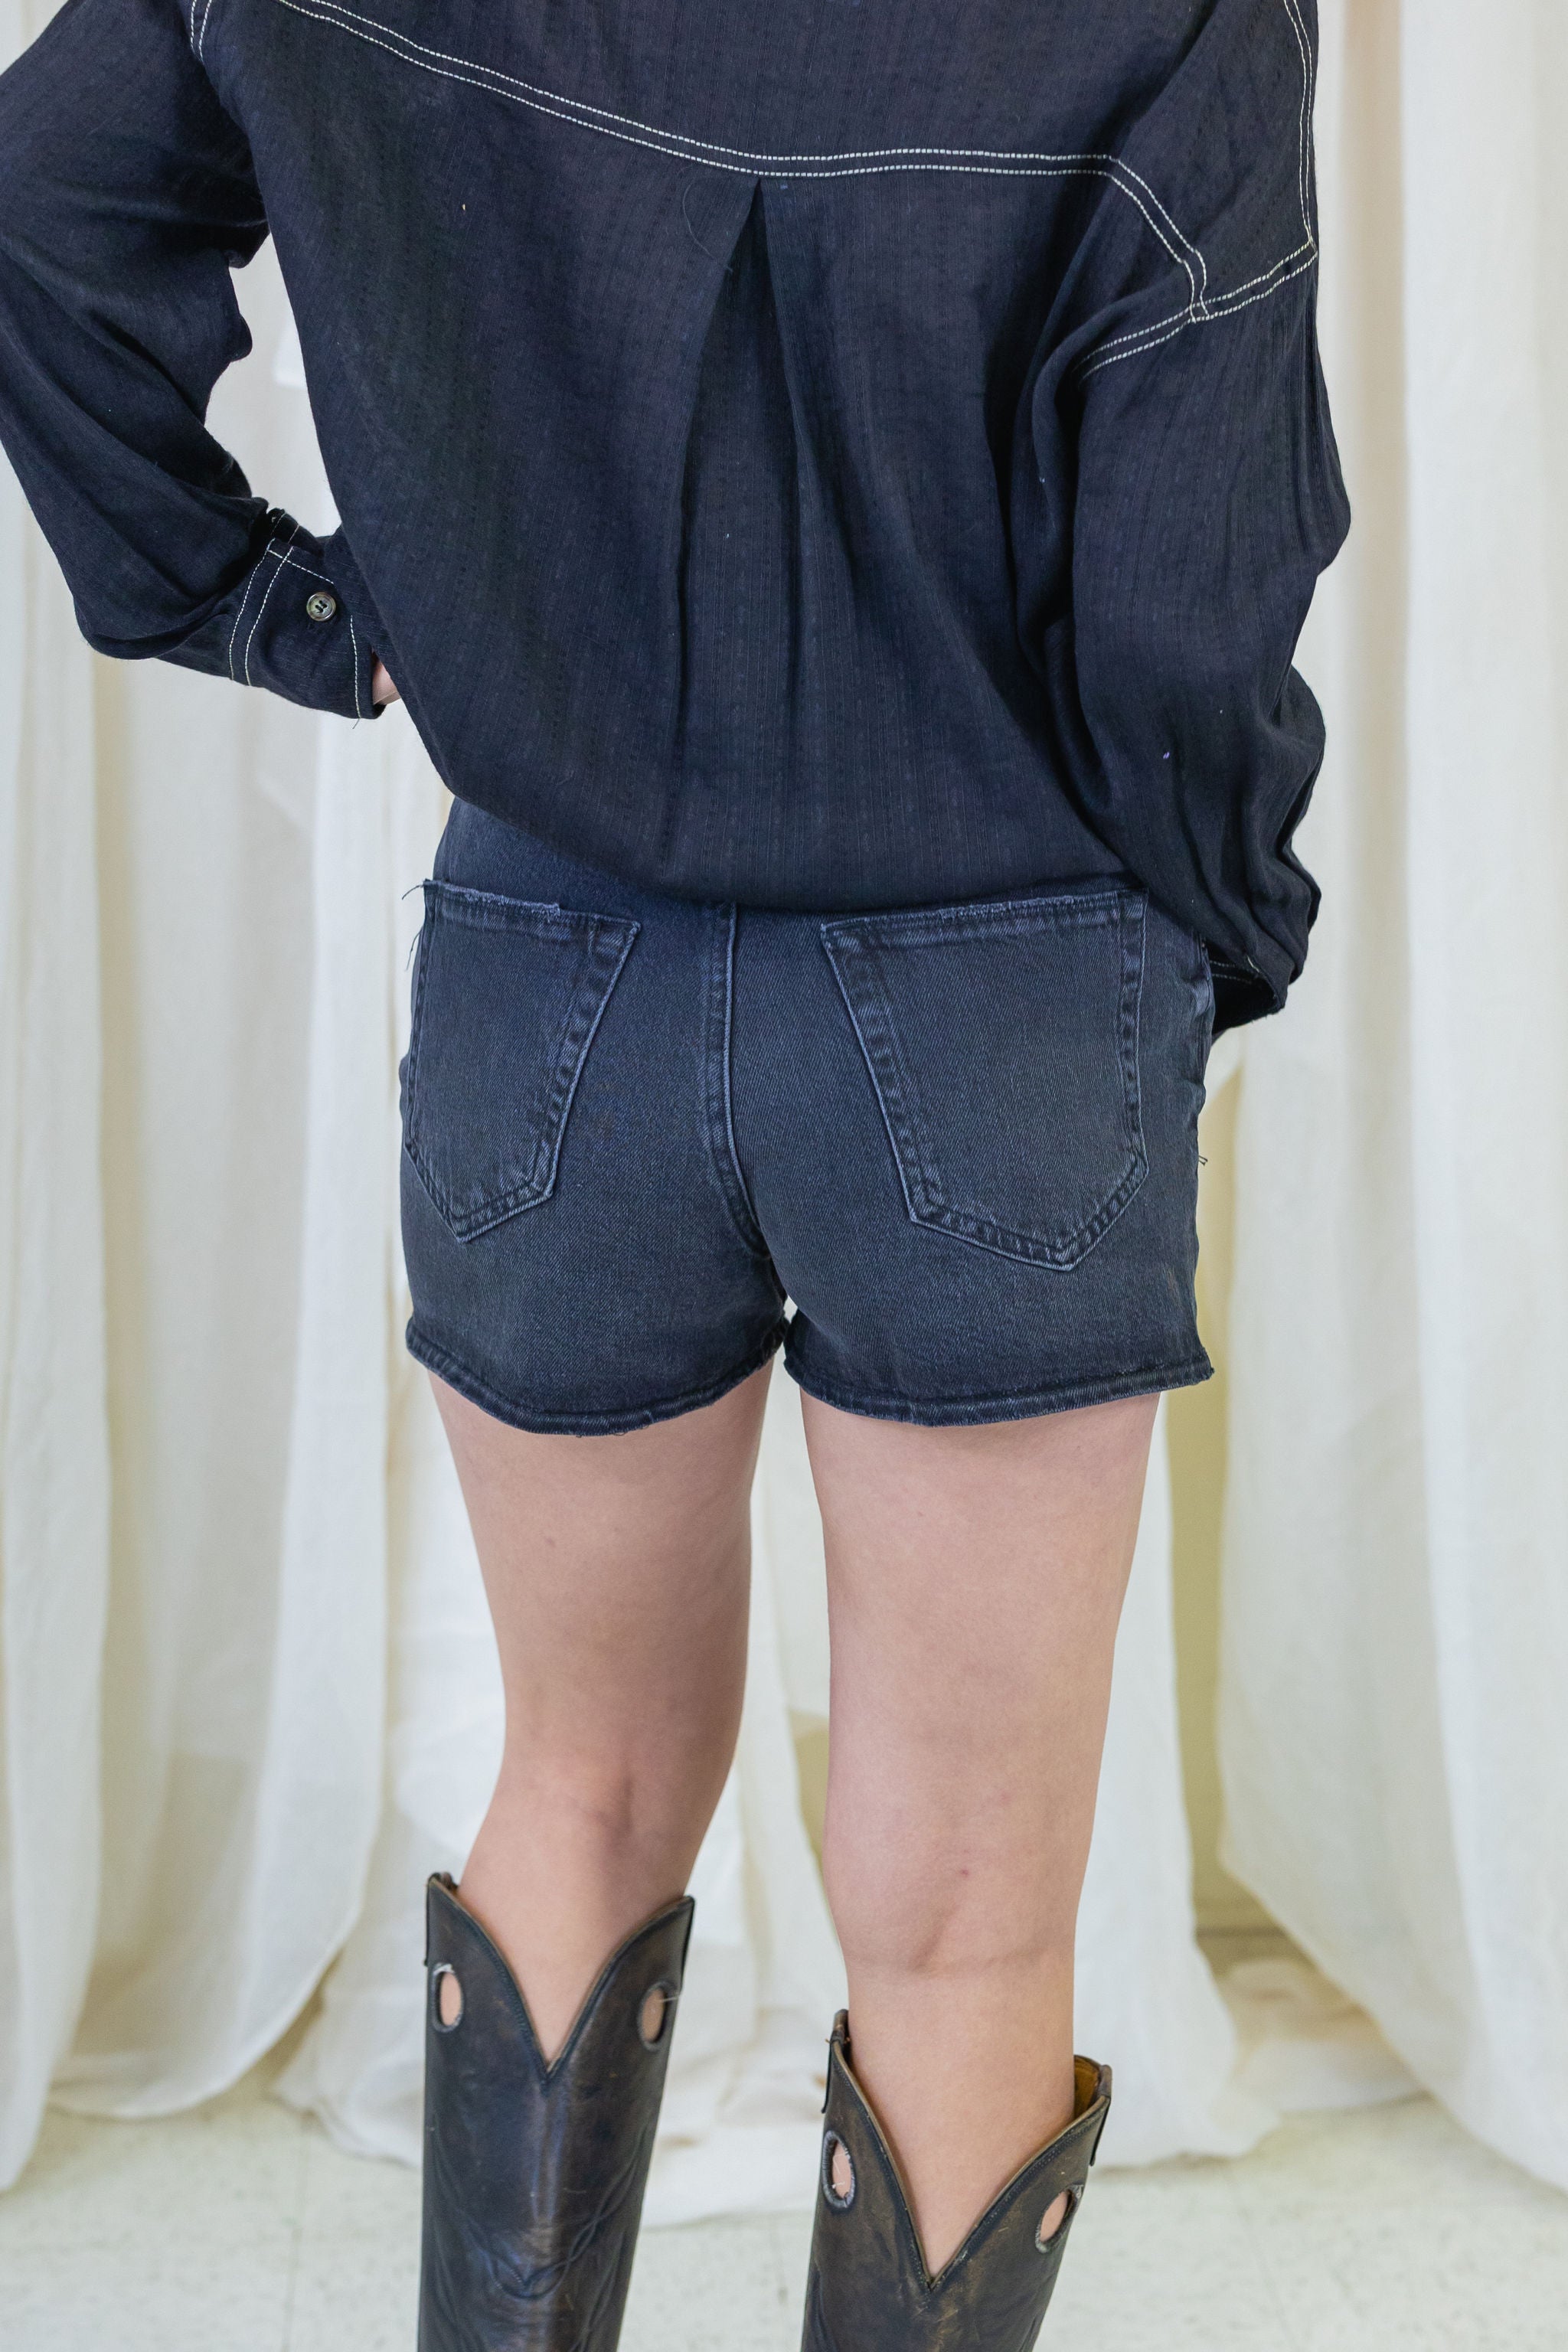 A-Line Denim Stretch Shorts by BDG